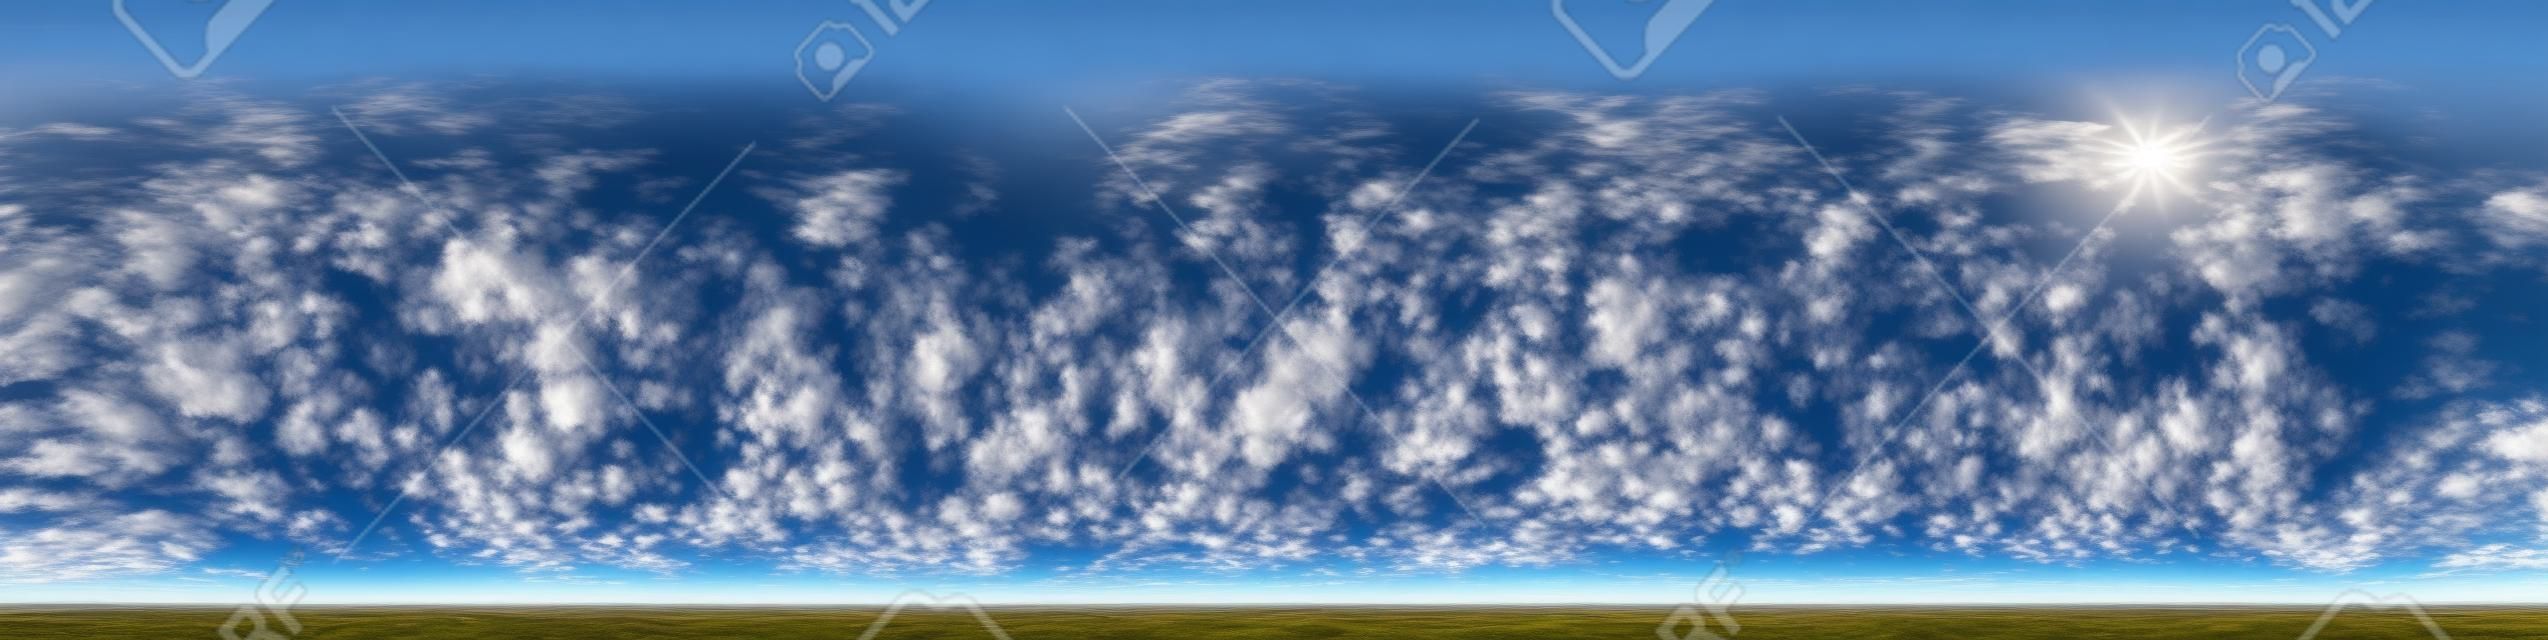 아름다운 멋진 구름과 푸른 하늘. 3d 그래픽 또는 게임 개발을 스카이 돔으로 사용하거나 드론 샷을 편집하기 위한 천정이 있는 매끄러운 hdri 파노라마 360도 각도 보기